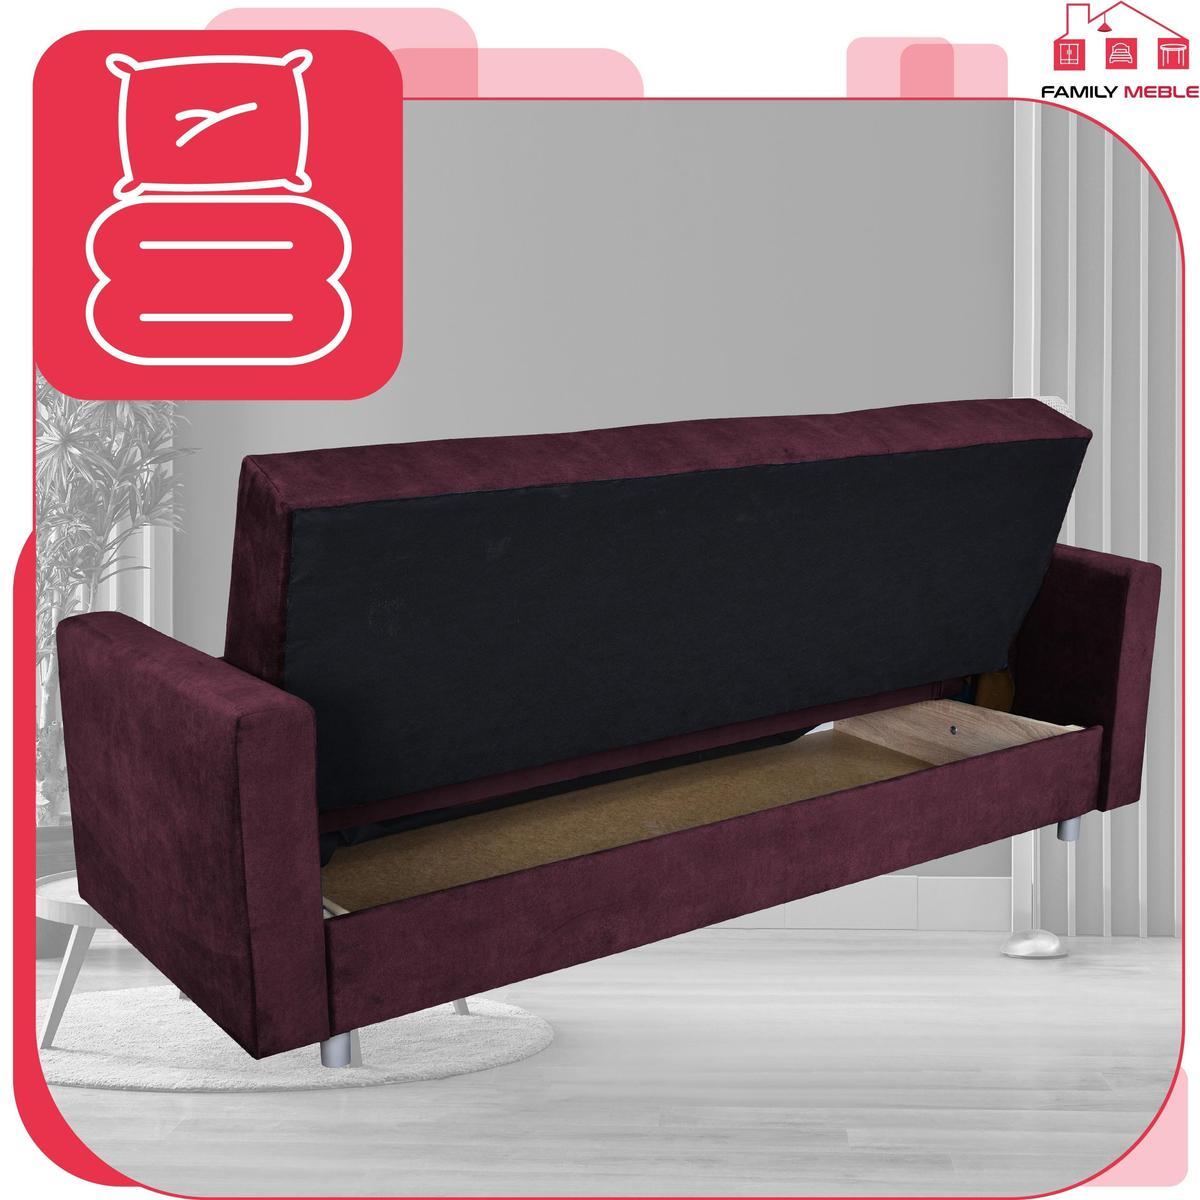 Wersalka sofa kanapa rozkładana Alicja FamilyMeble 5 Full Screen